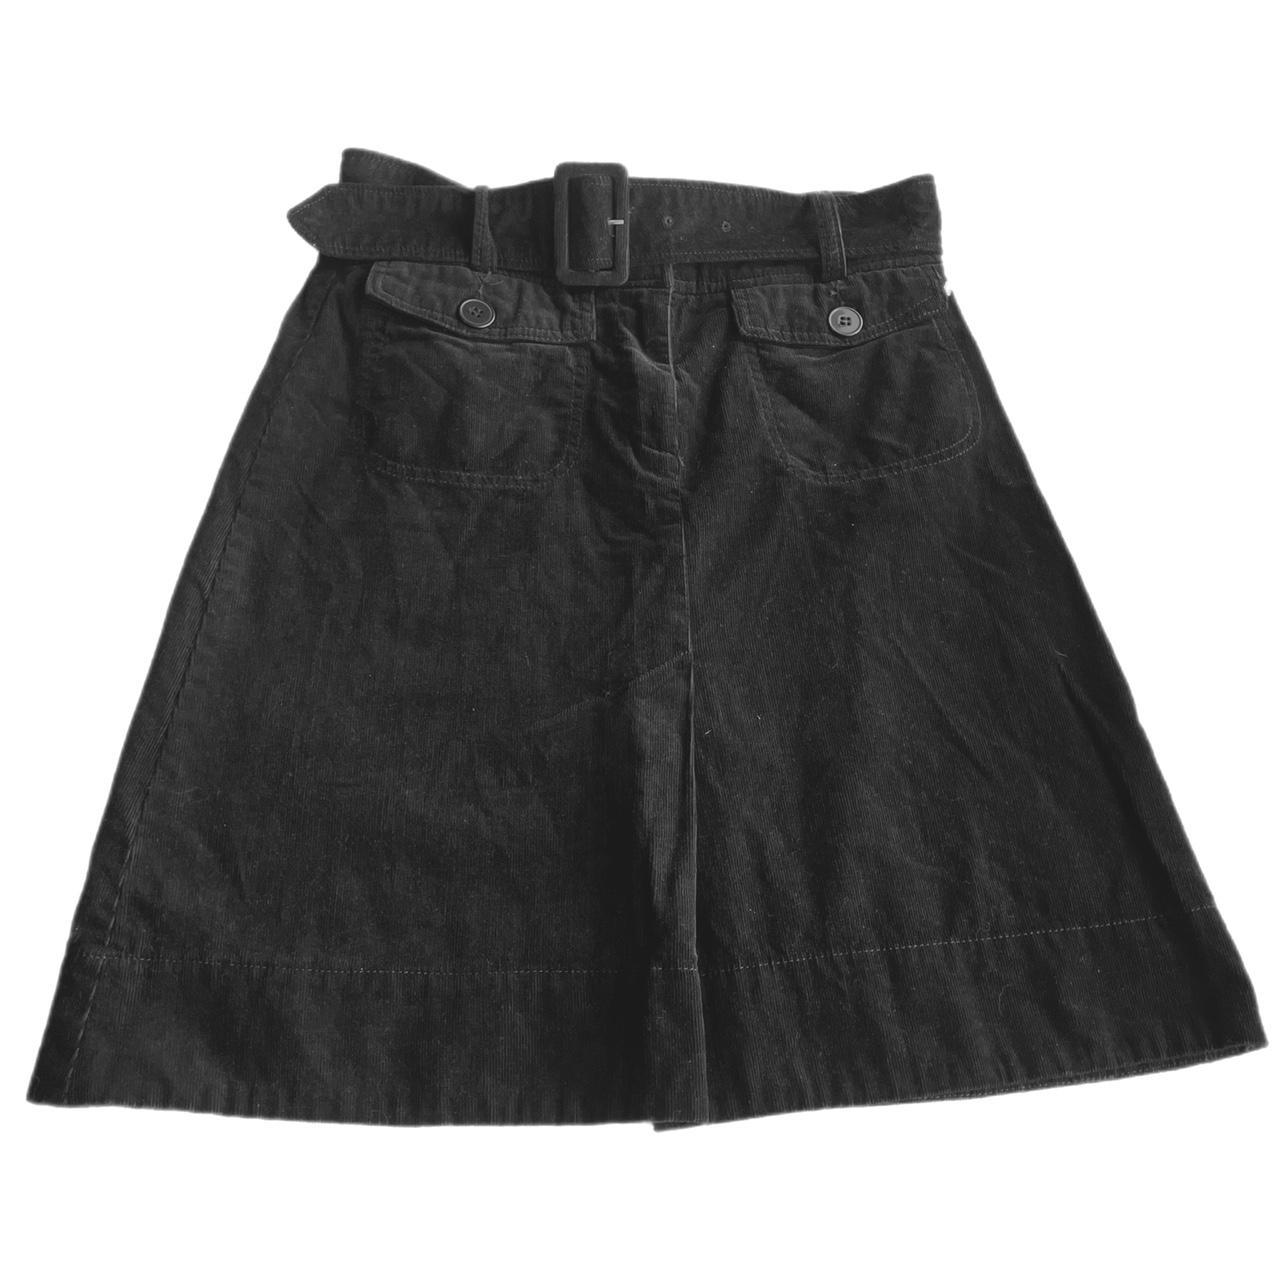 H&M Women's Black Skirt | Depop